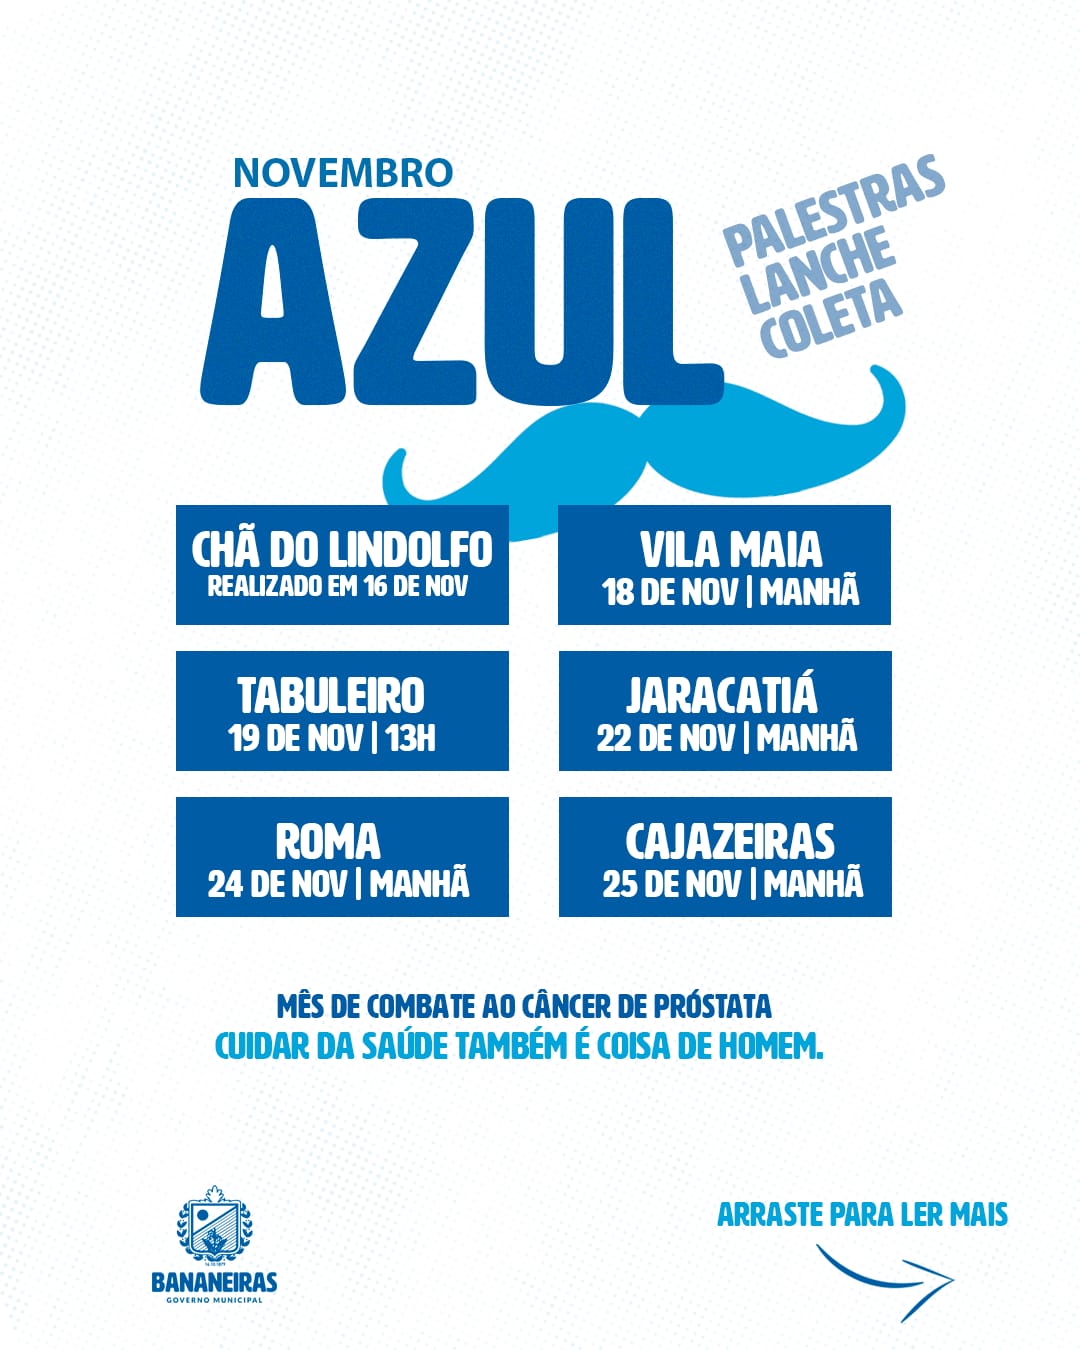 Iniciada a programação das palestras em alusão ao Novembro Azul nas unidades de saúde do município